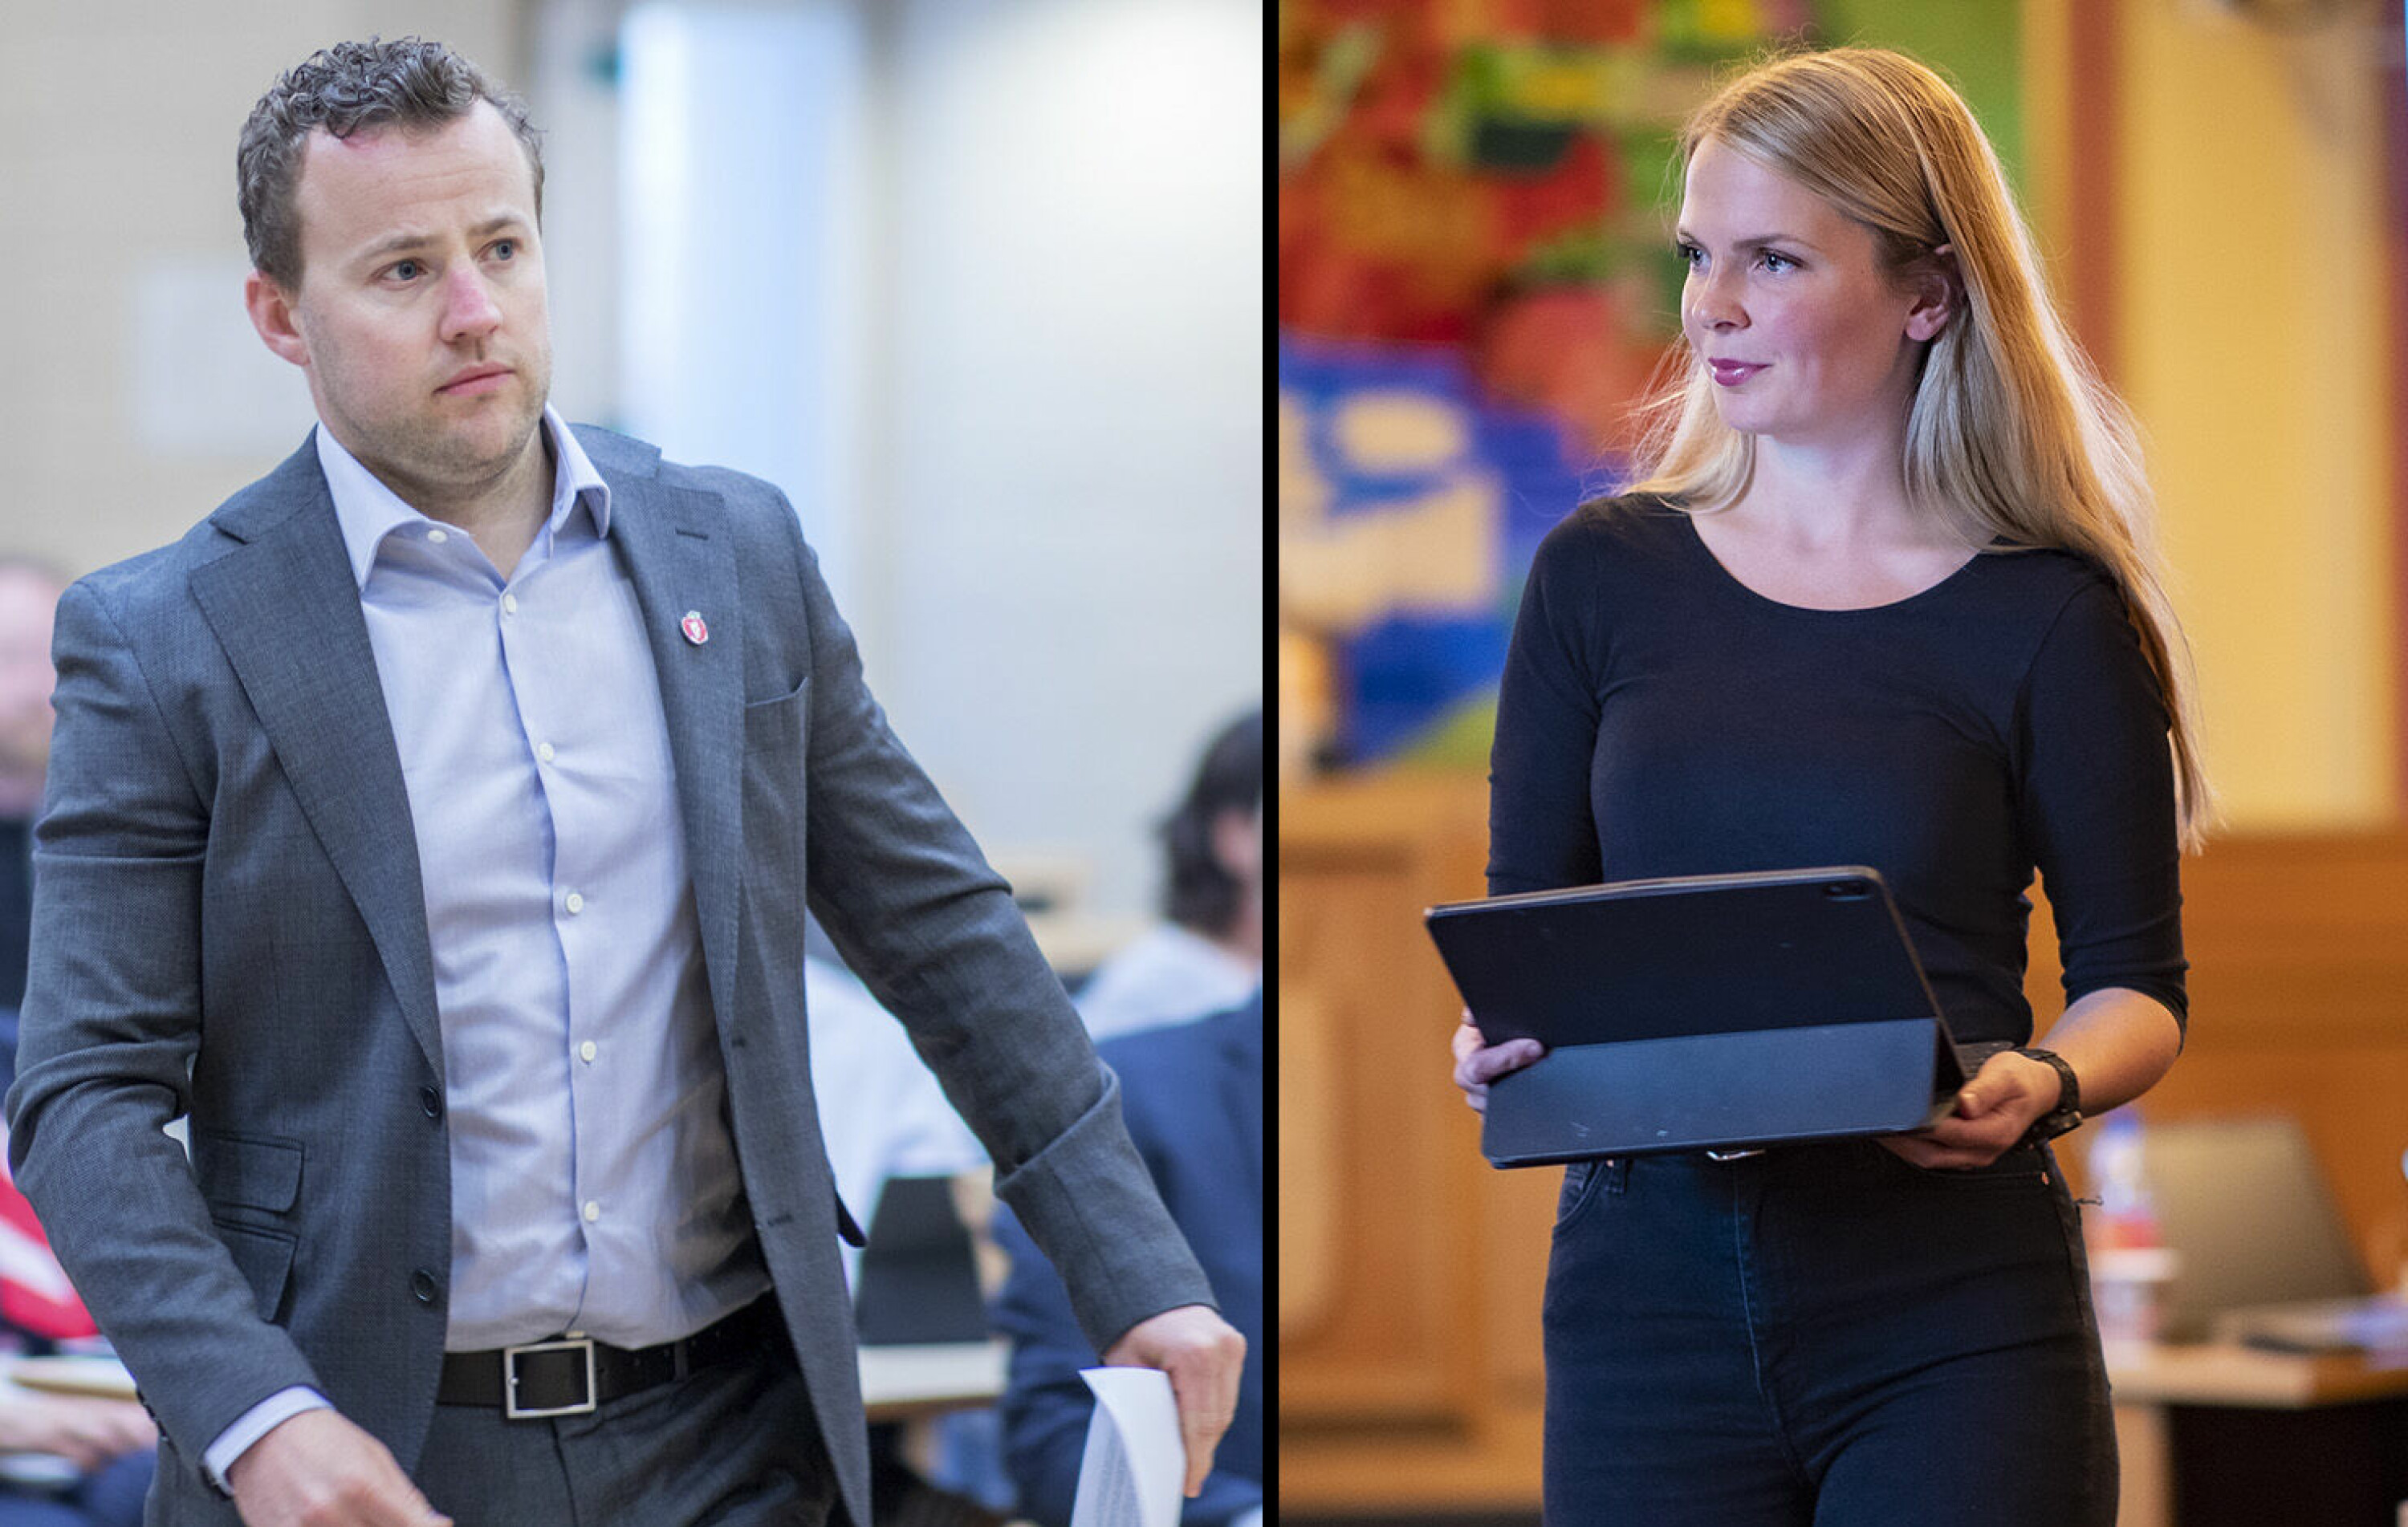 UNG DRAMMENSDUO: Lavrans Kierulf og Kristin Gjerde sitter også i kommunestyret i Drammen, og vil etter alt å dømme også prege fylkespolitikken i Buskerud fremover.